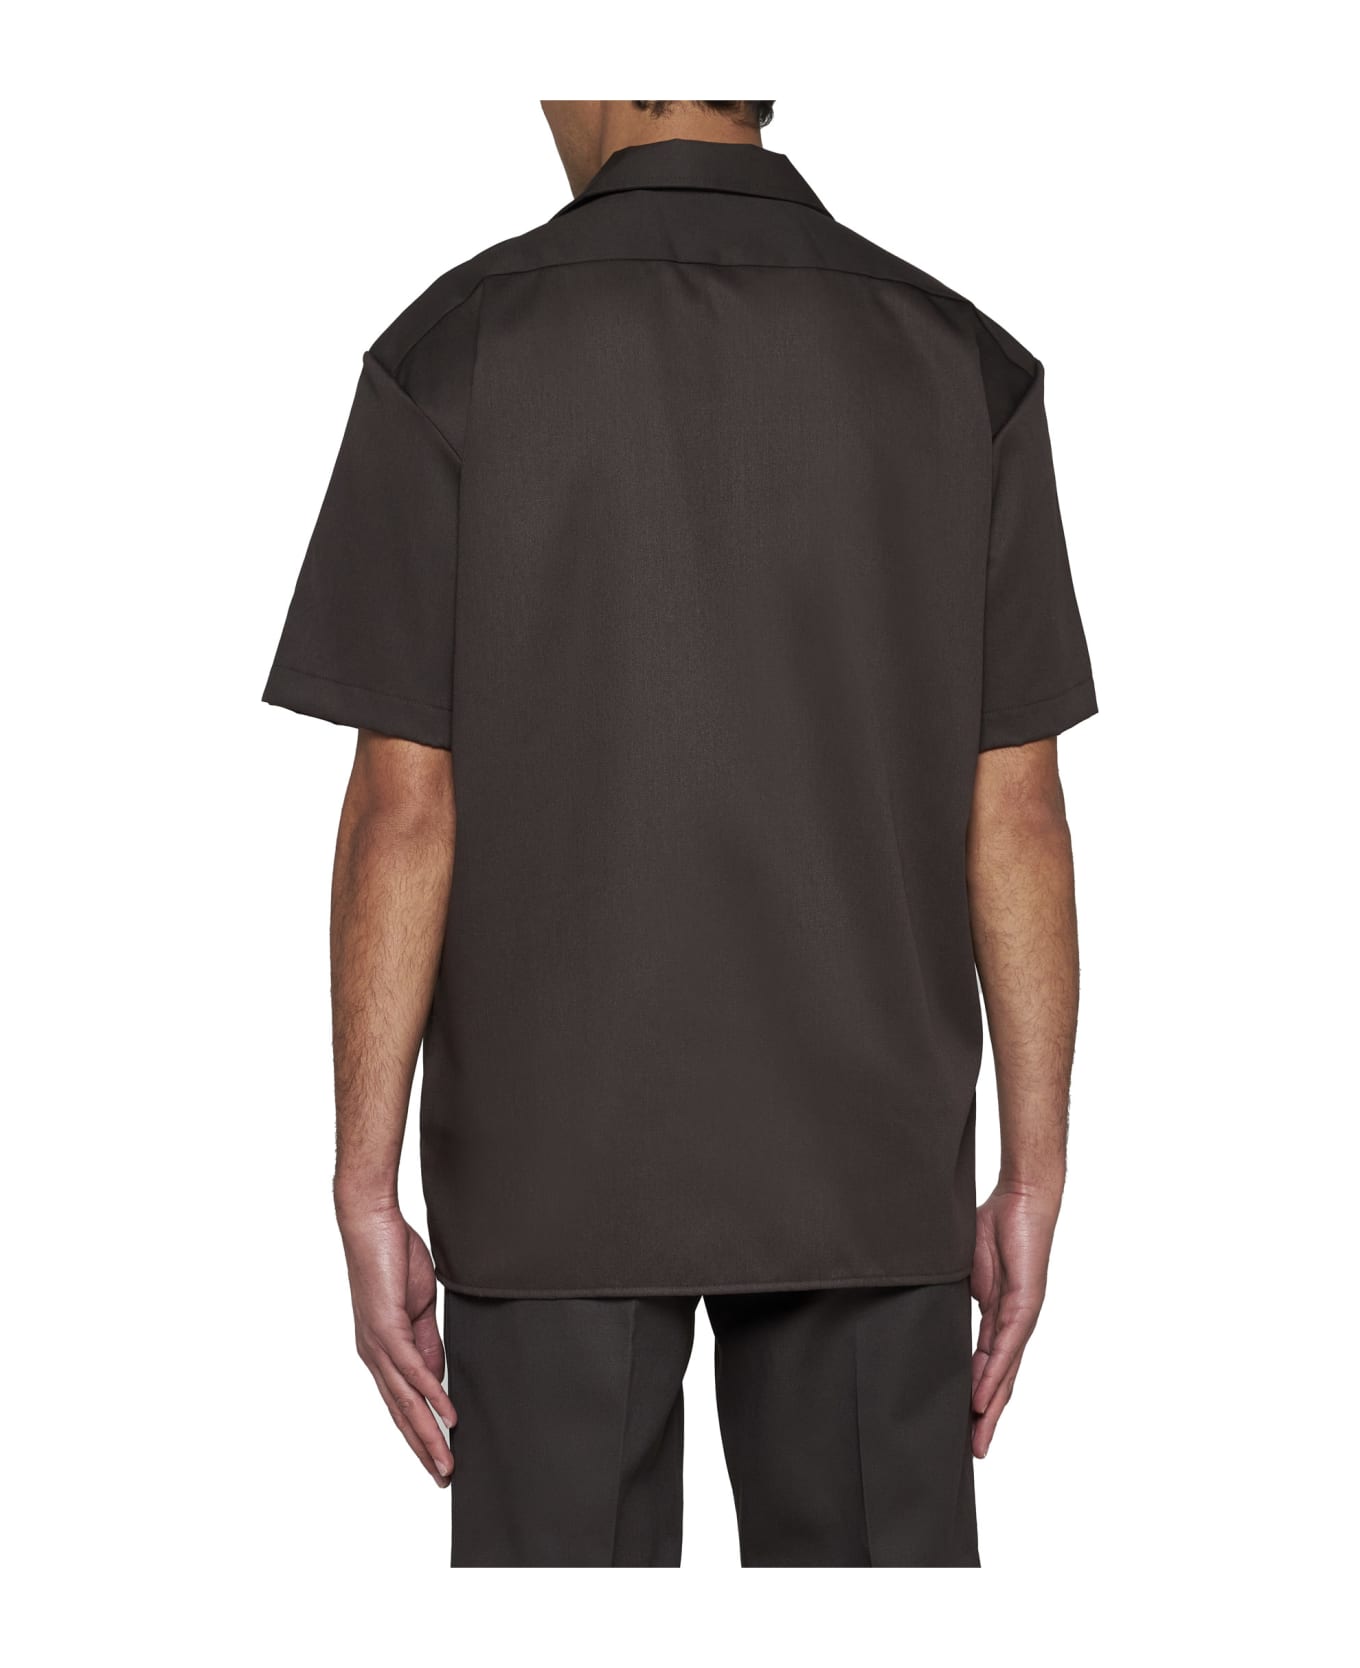 Dickies Shirt - Dark brown シャツ